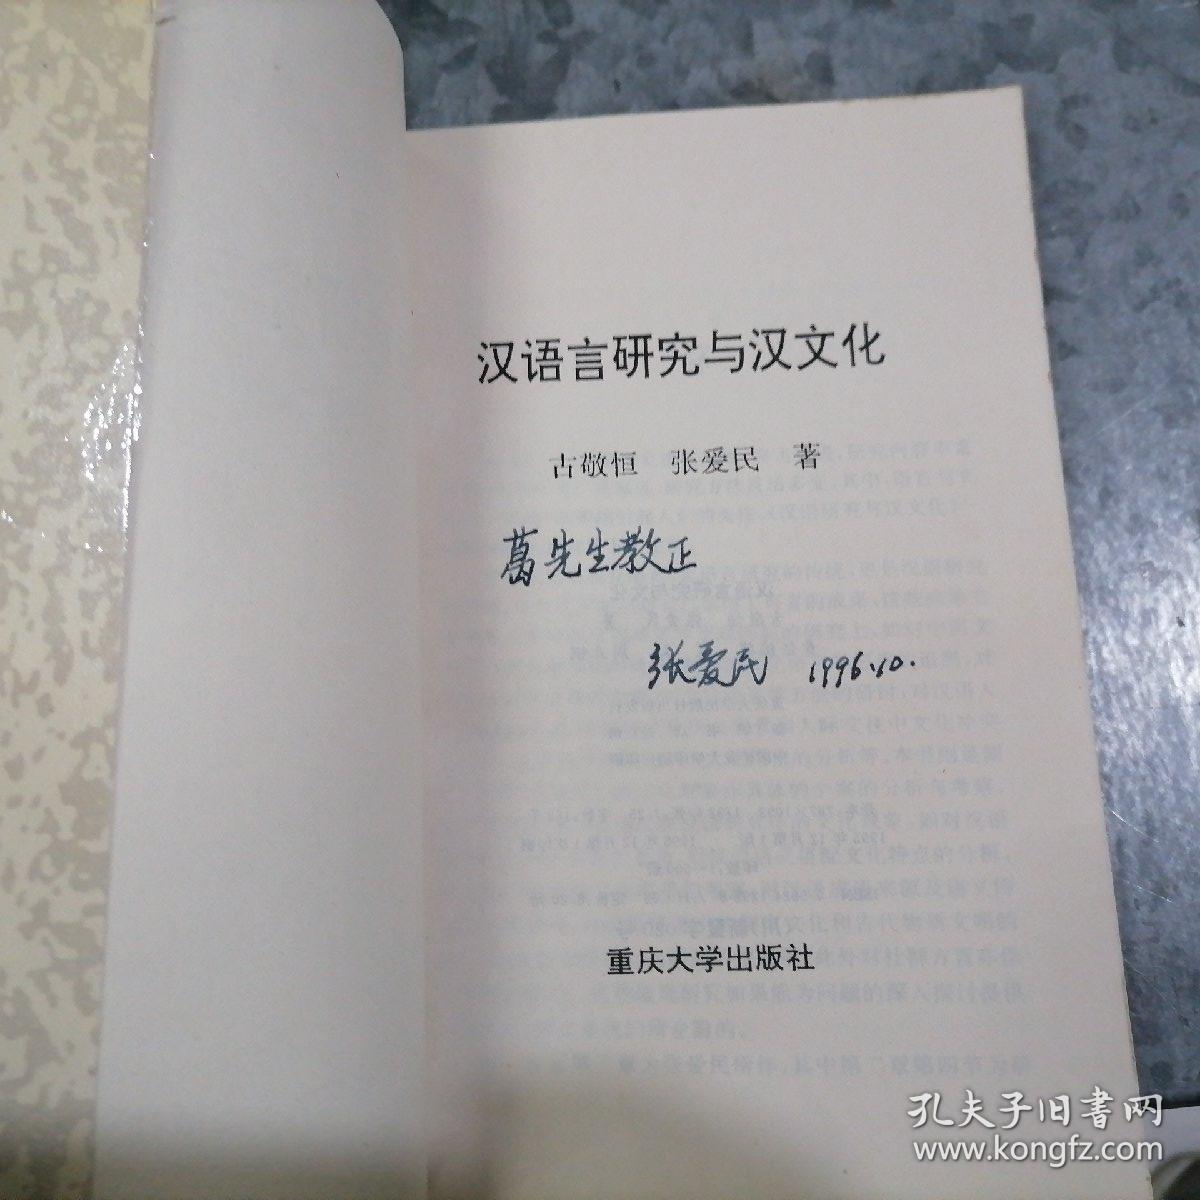 P7765汉语言研究与汉文化 作者张爱民签赠本